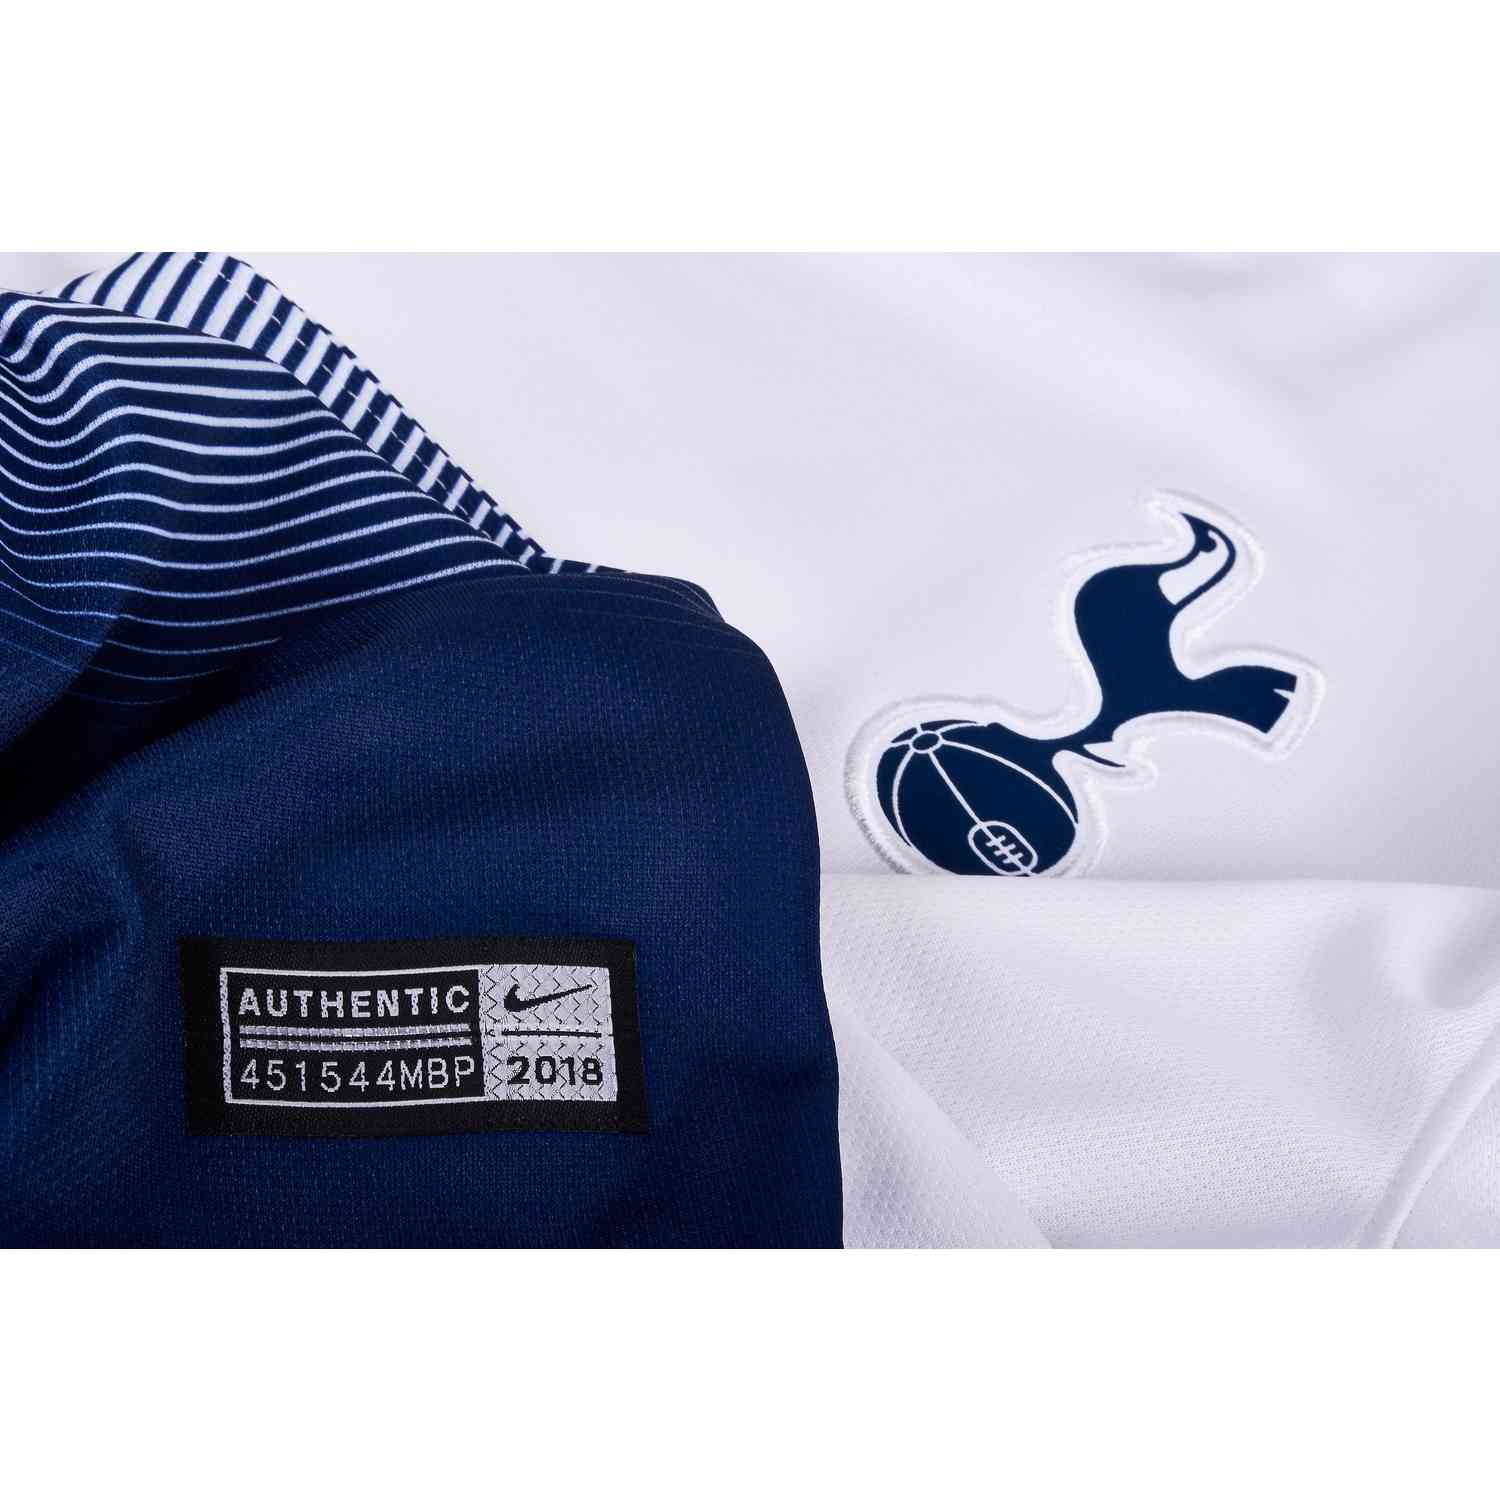 2018/19 Nike Tottenham Home Jersey - SoccerPro